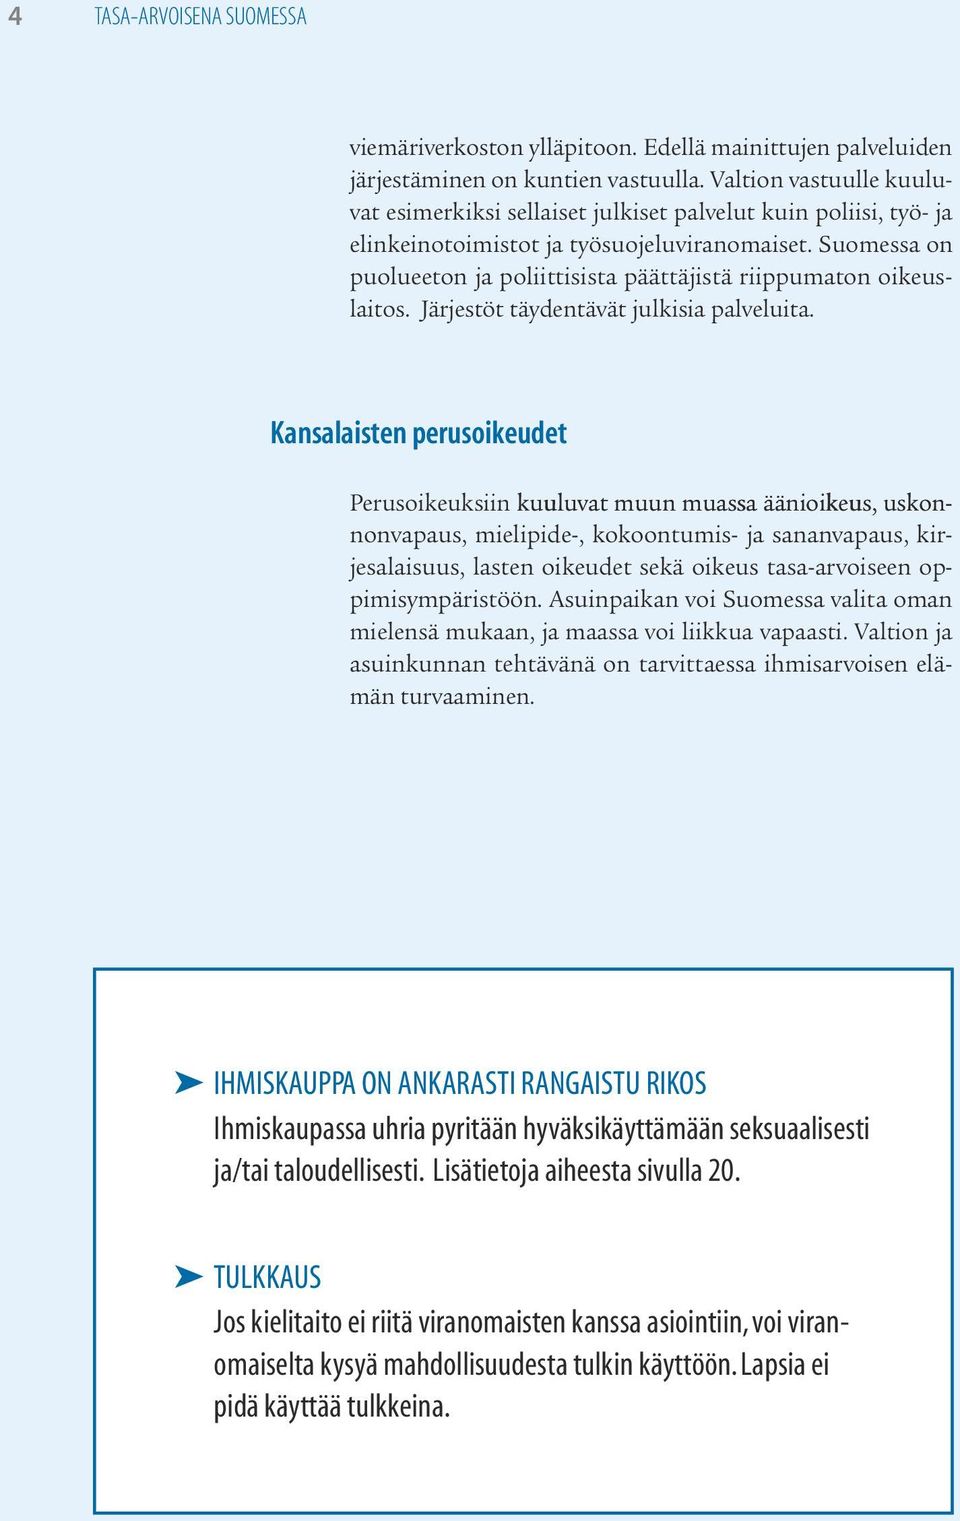 Suomessa on puolueeton ja poliittisista päättäjistä riippumaton oikeuslaitos. Järjestöt täydentävät julkisia palveluita.